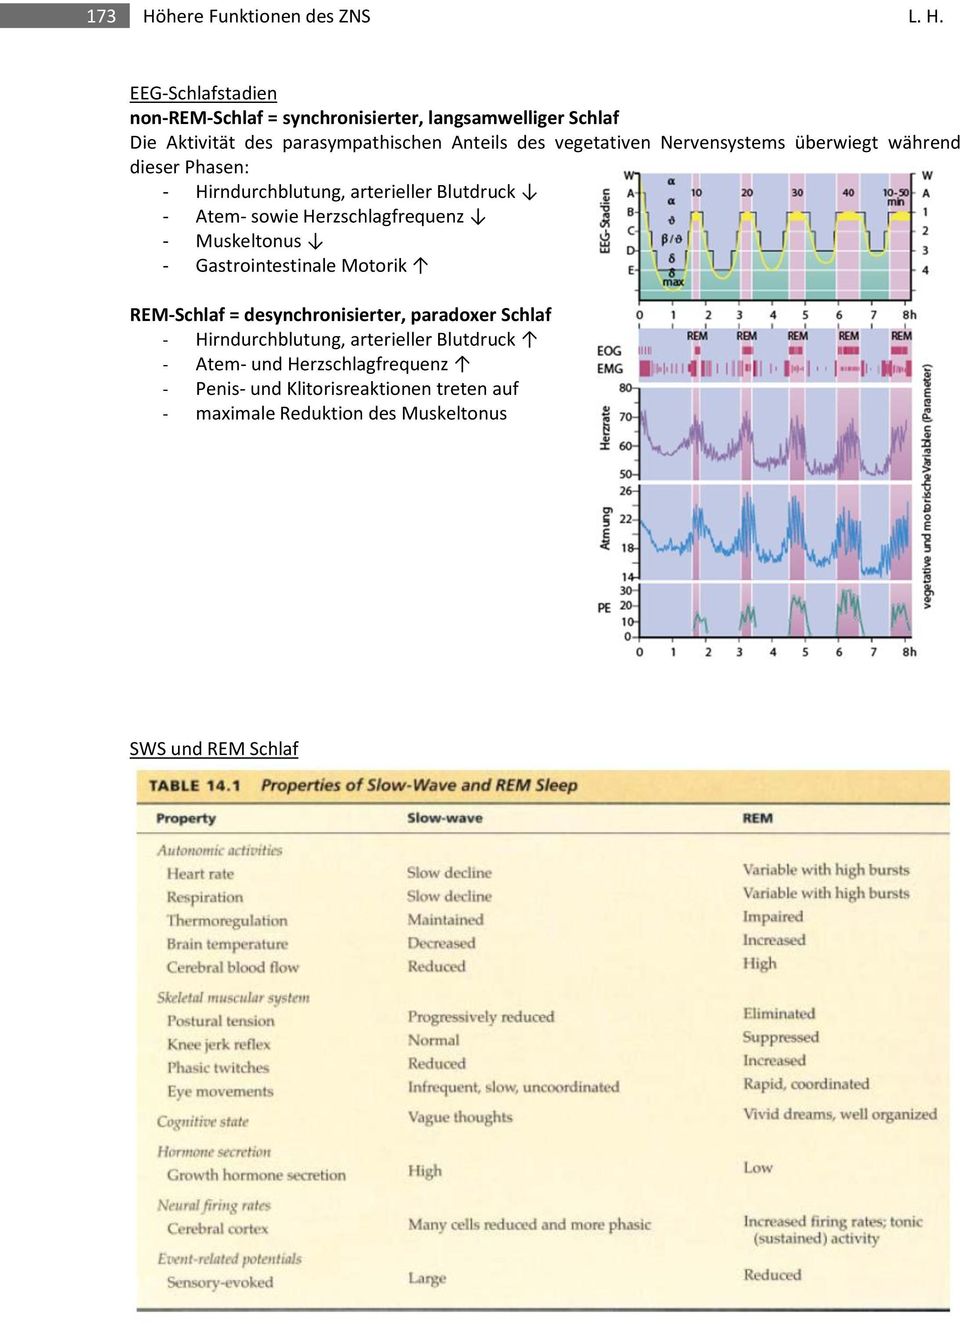 EEG-Schlafstadien non-rem-schlaf = synchronisierter, langsamwelliger Schlaf Die Aktivität des parasympathischen Anteils des vegetativen